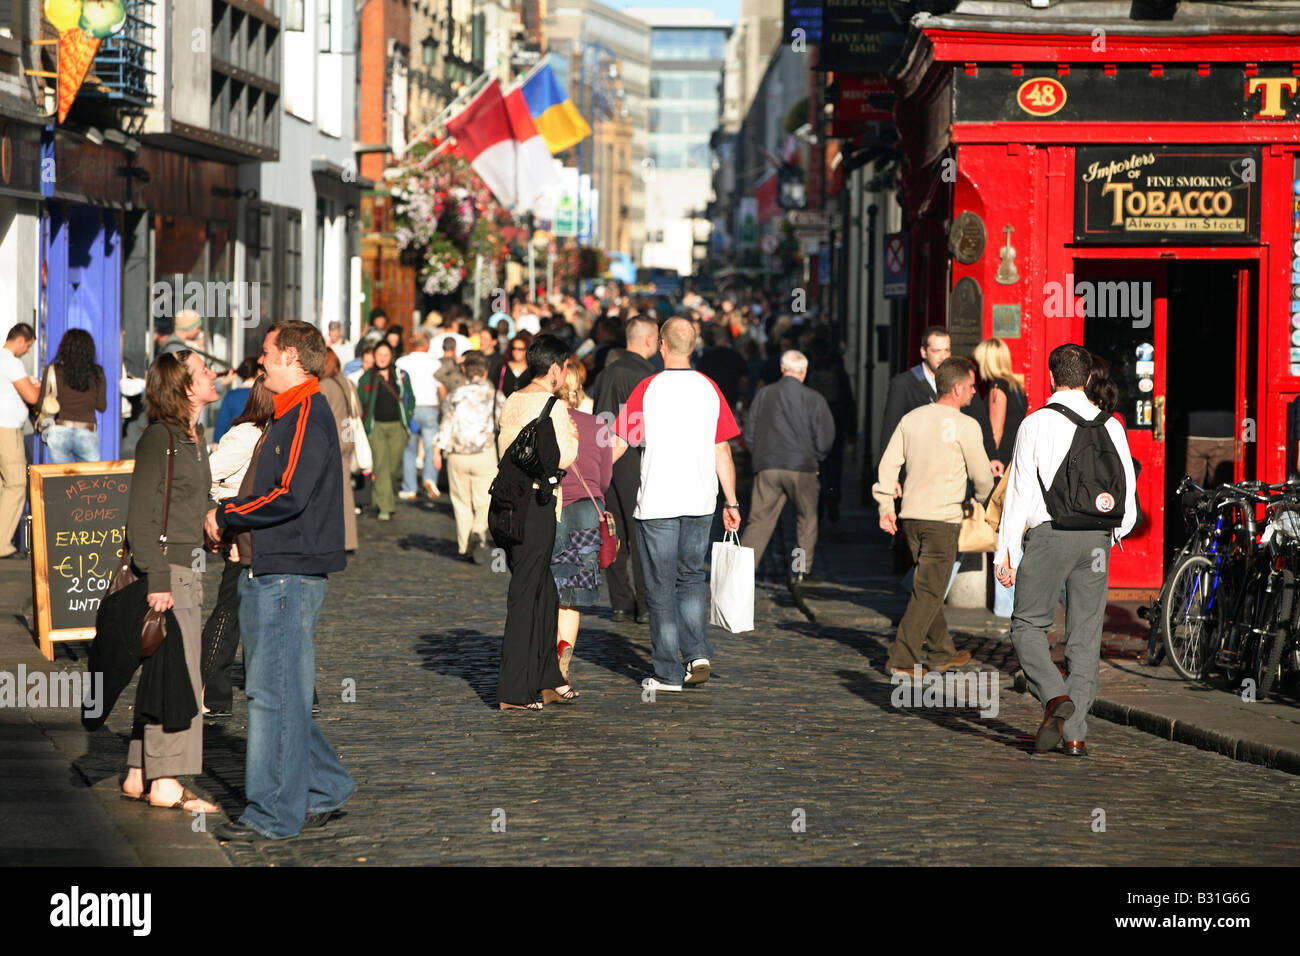 Pedestrians in the city center, Dublin, Ireland Stock Photo